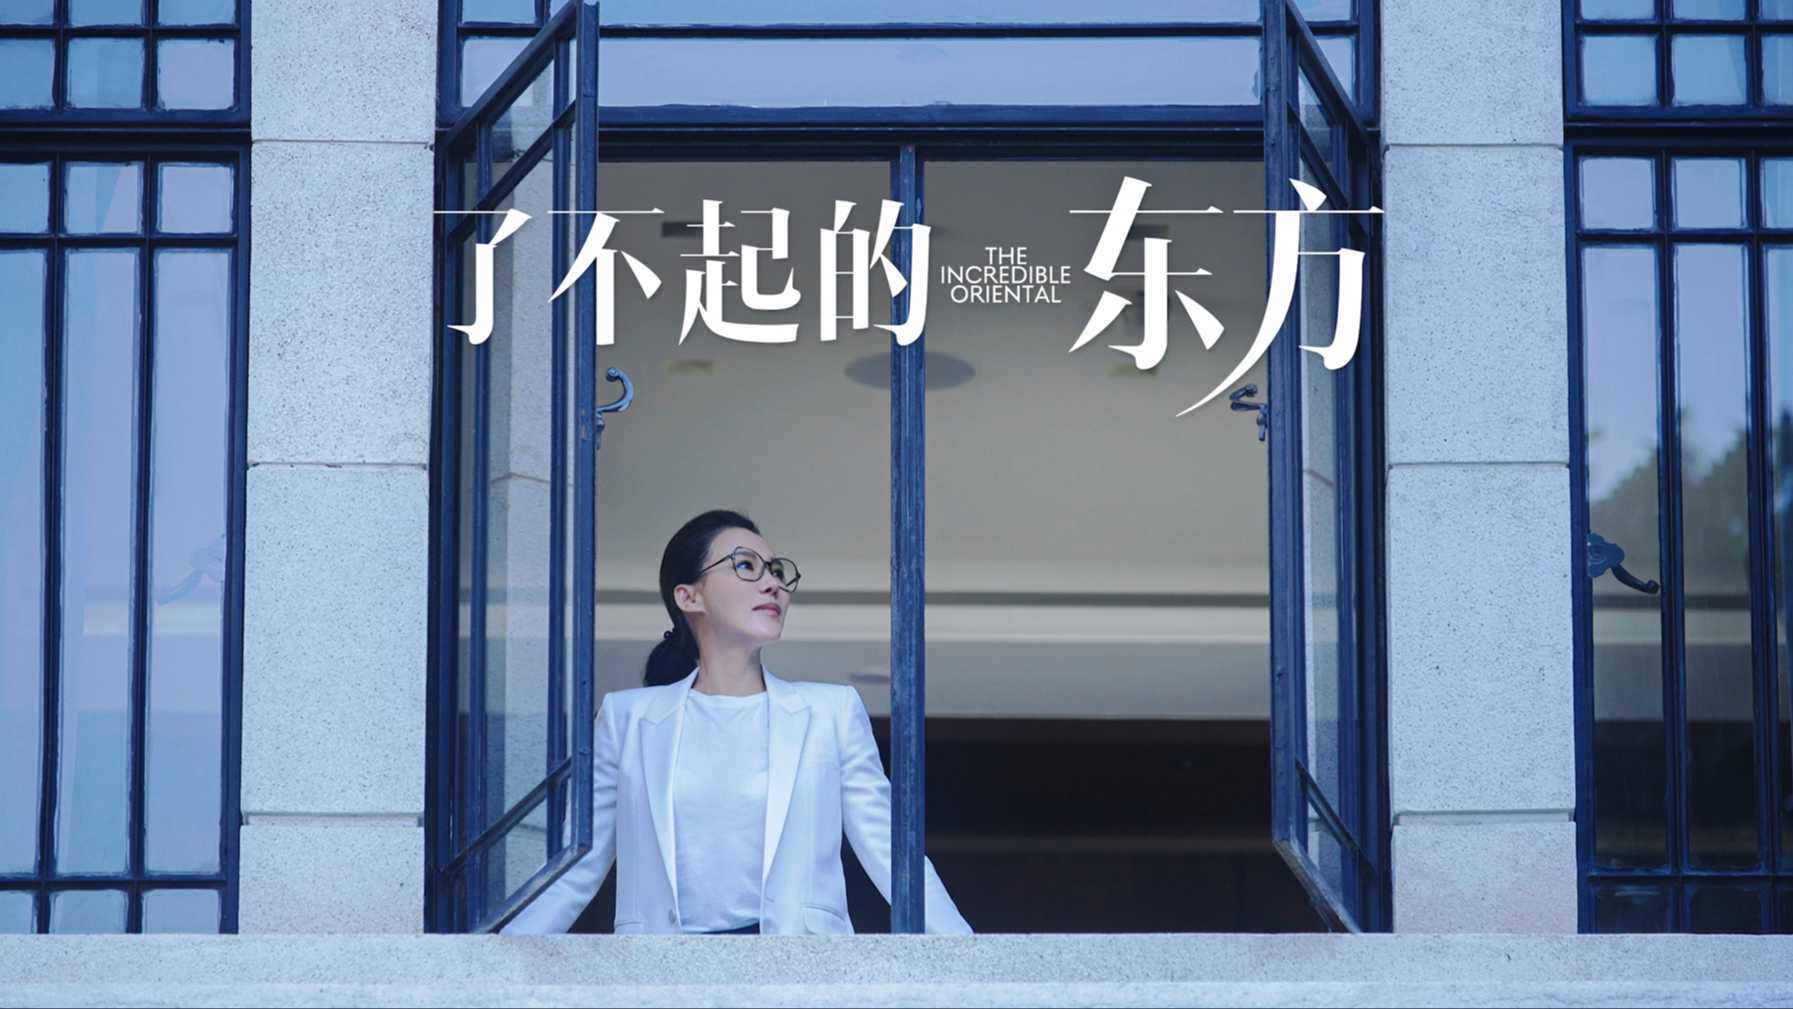 Cindy Chao x 商业周刊  《了不起的东方》纪录片